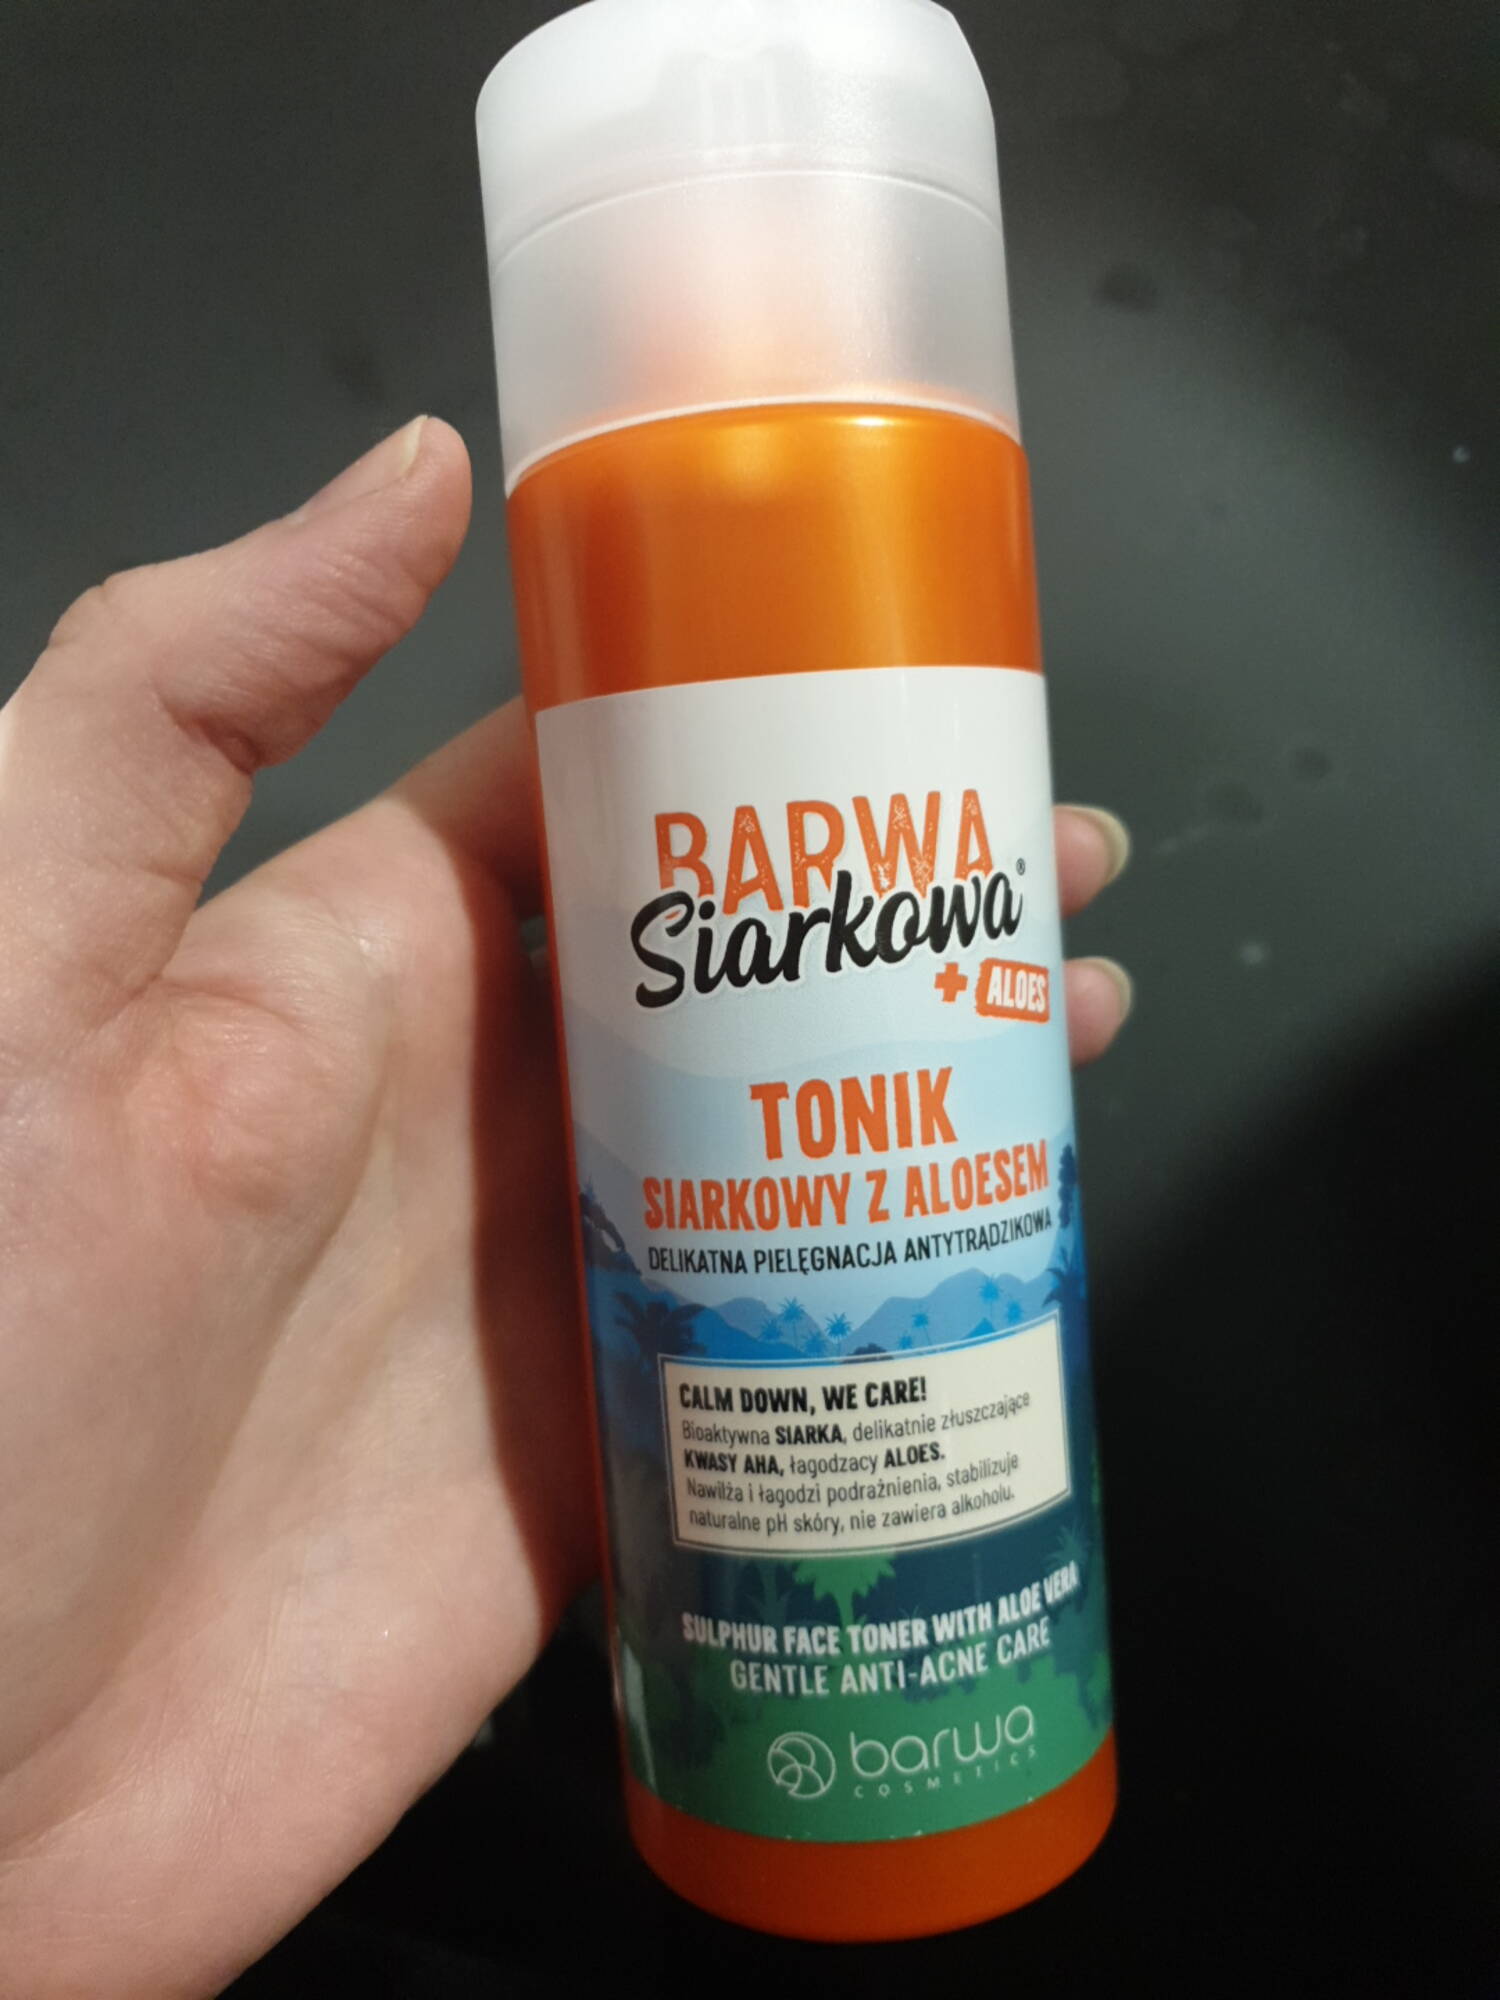 BARWA SIARKOWA - Gentle anti-acne care 